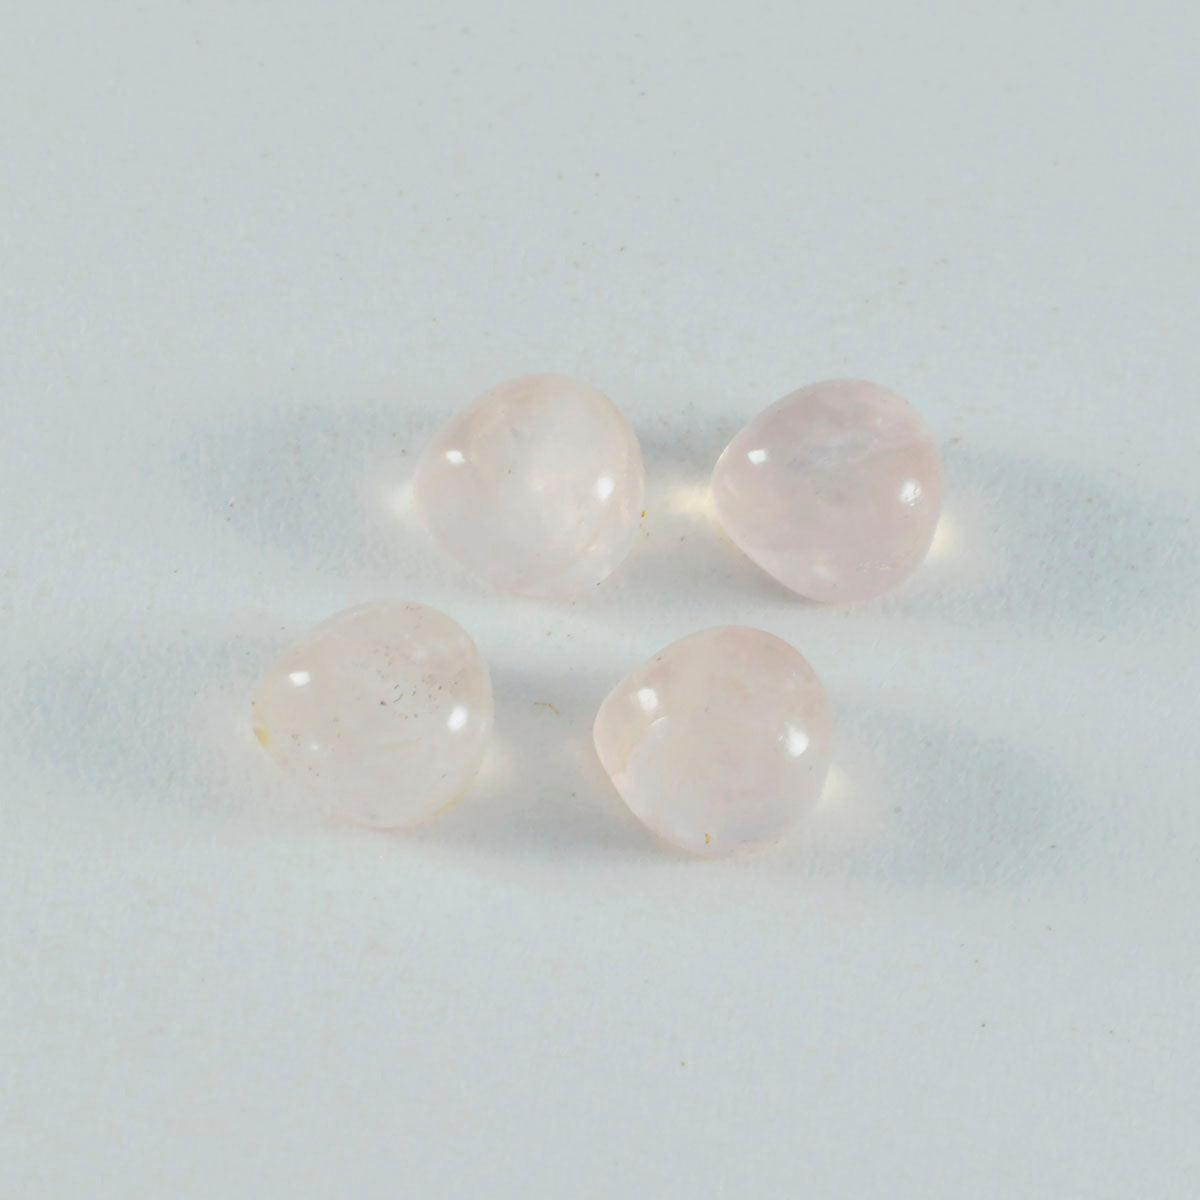 riyogems 1 шт. кабошон из розового кварца 7x7 мм в форме сердца, красивый качественный драгоценный камень